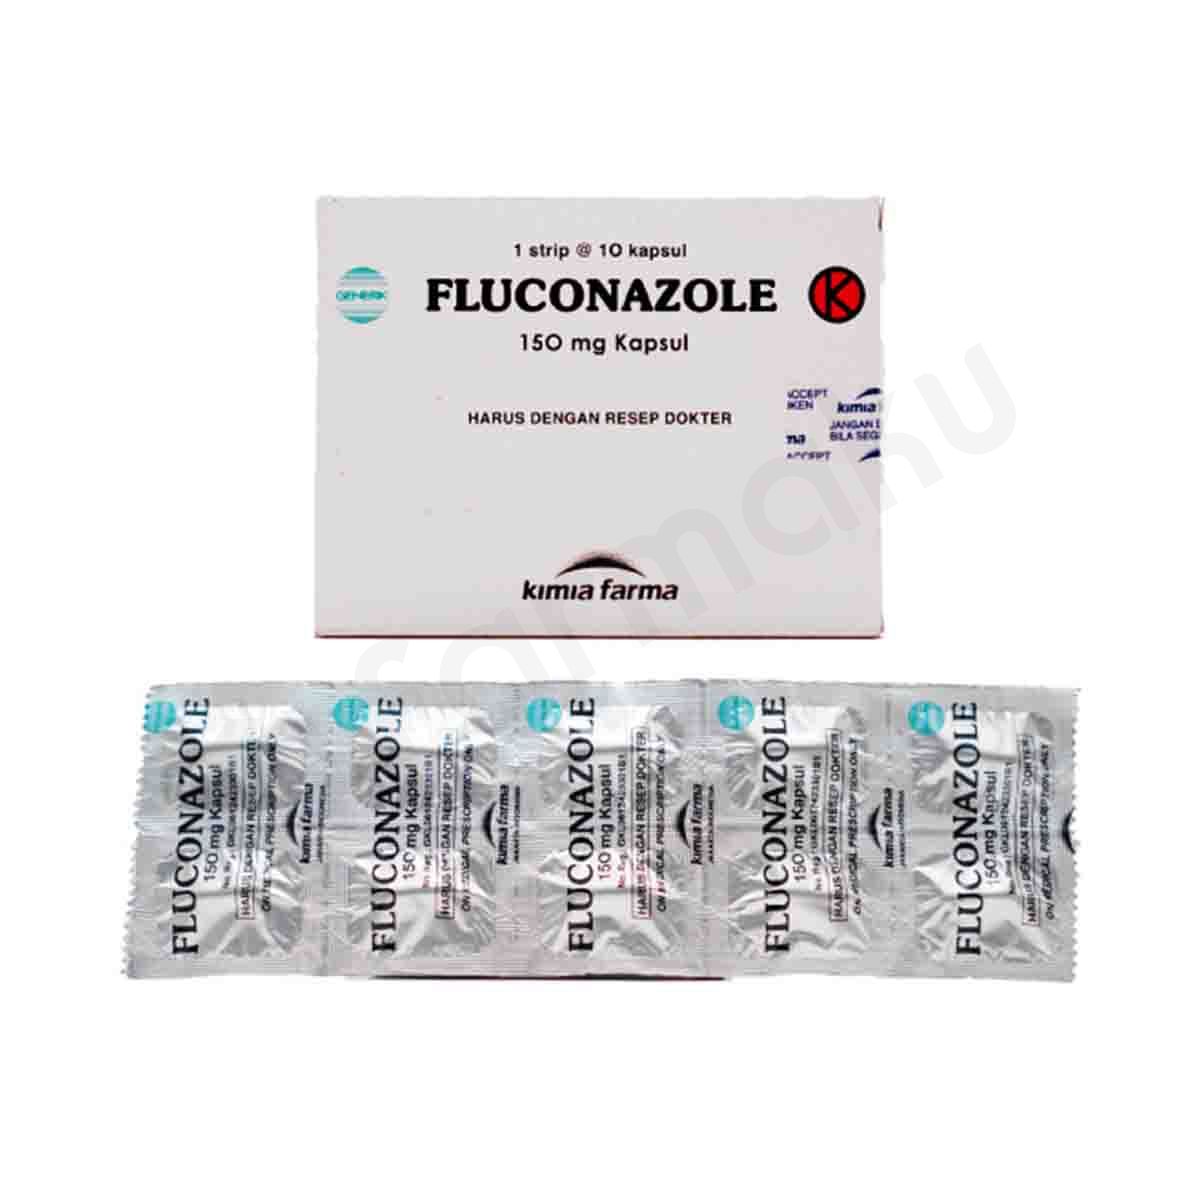 Fluconazole 150 mg